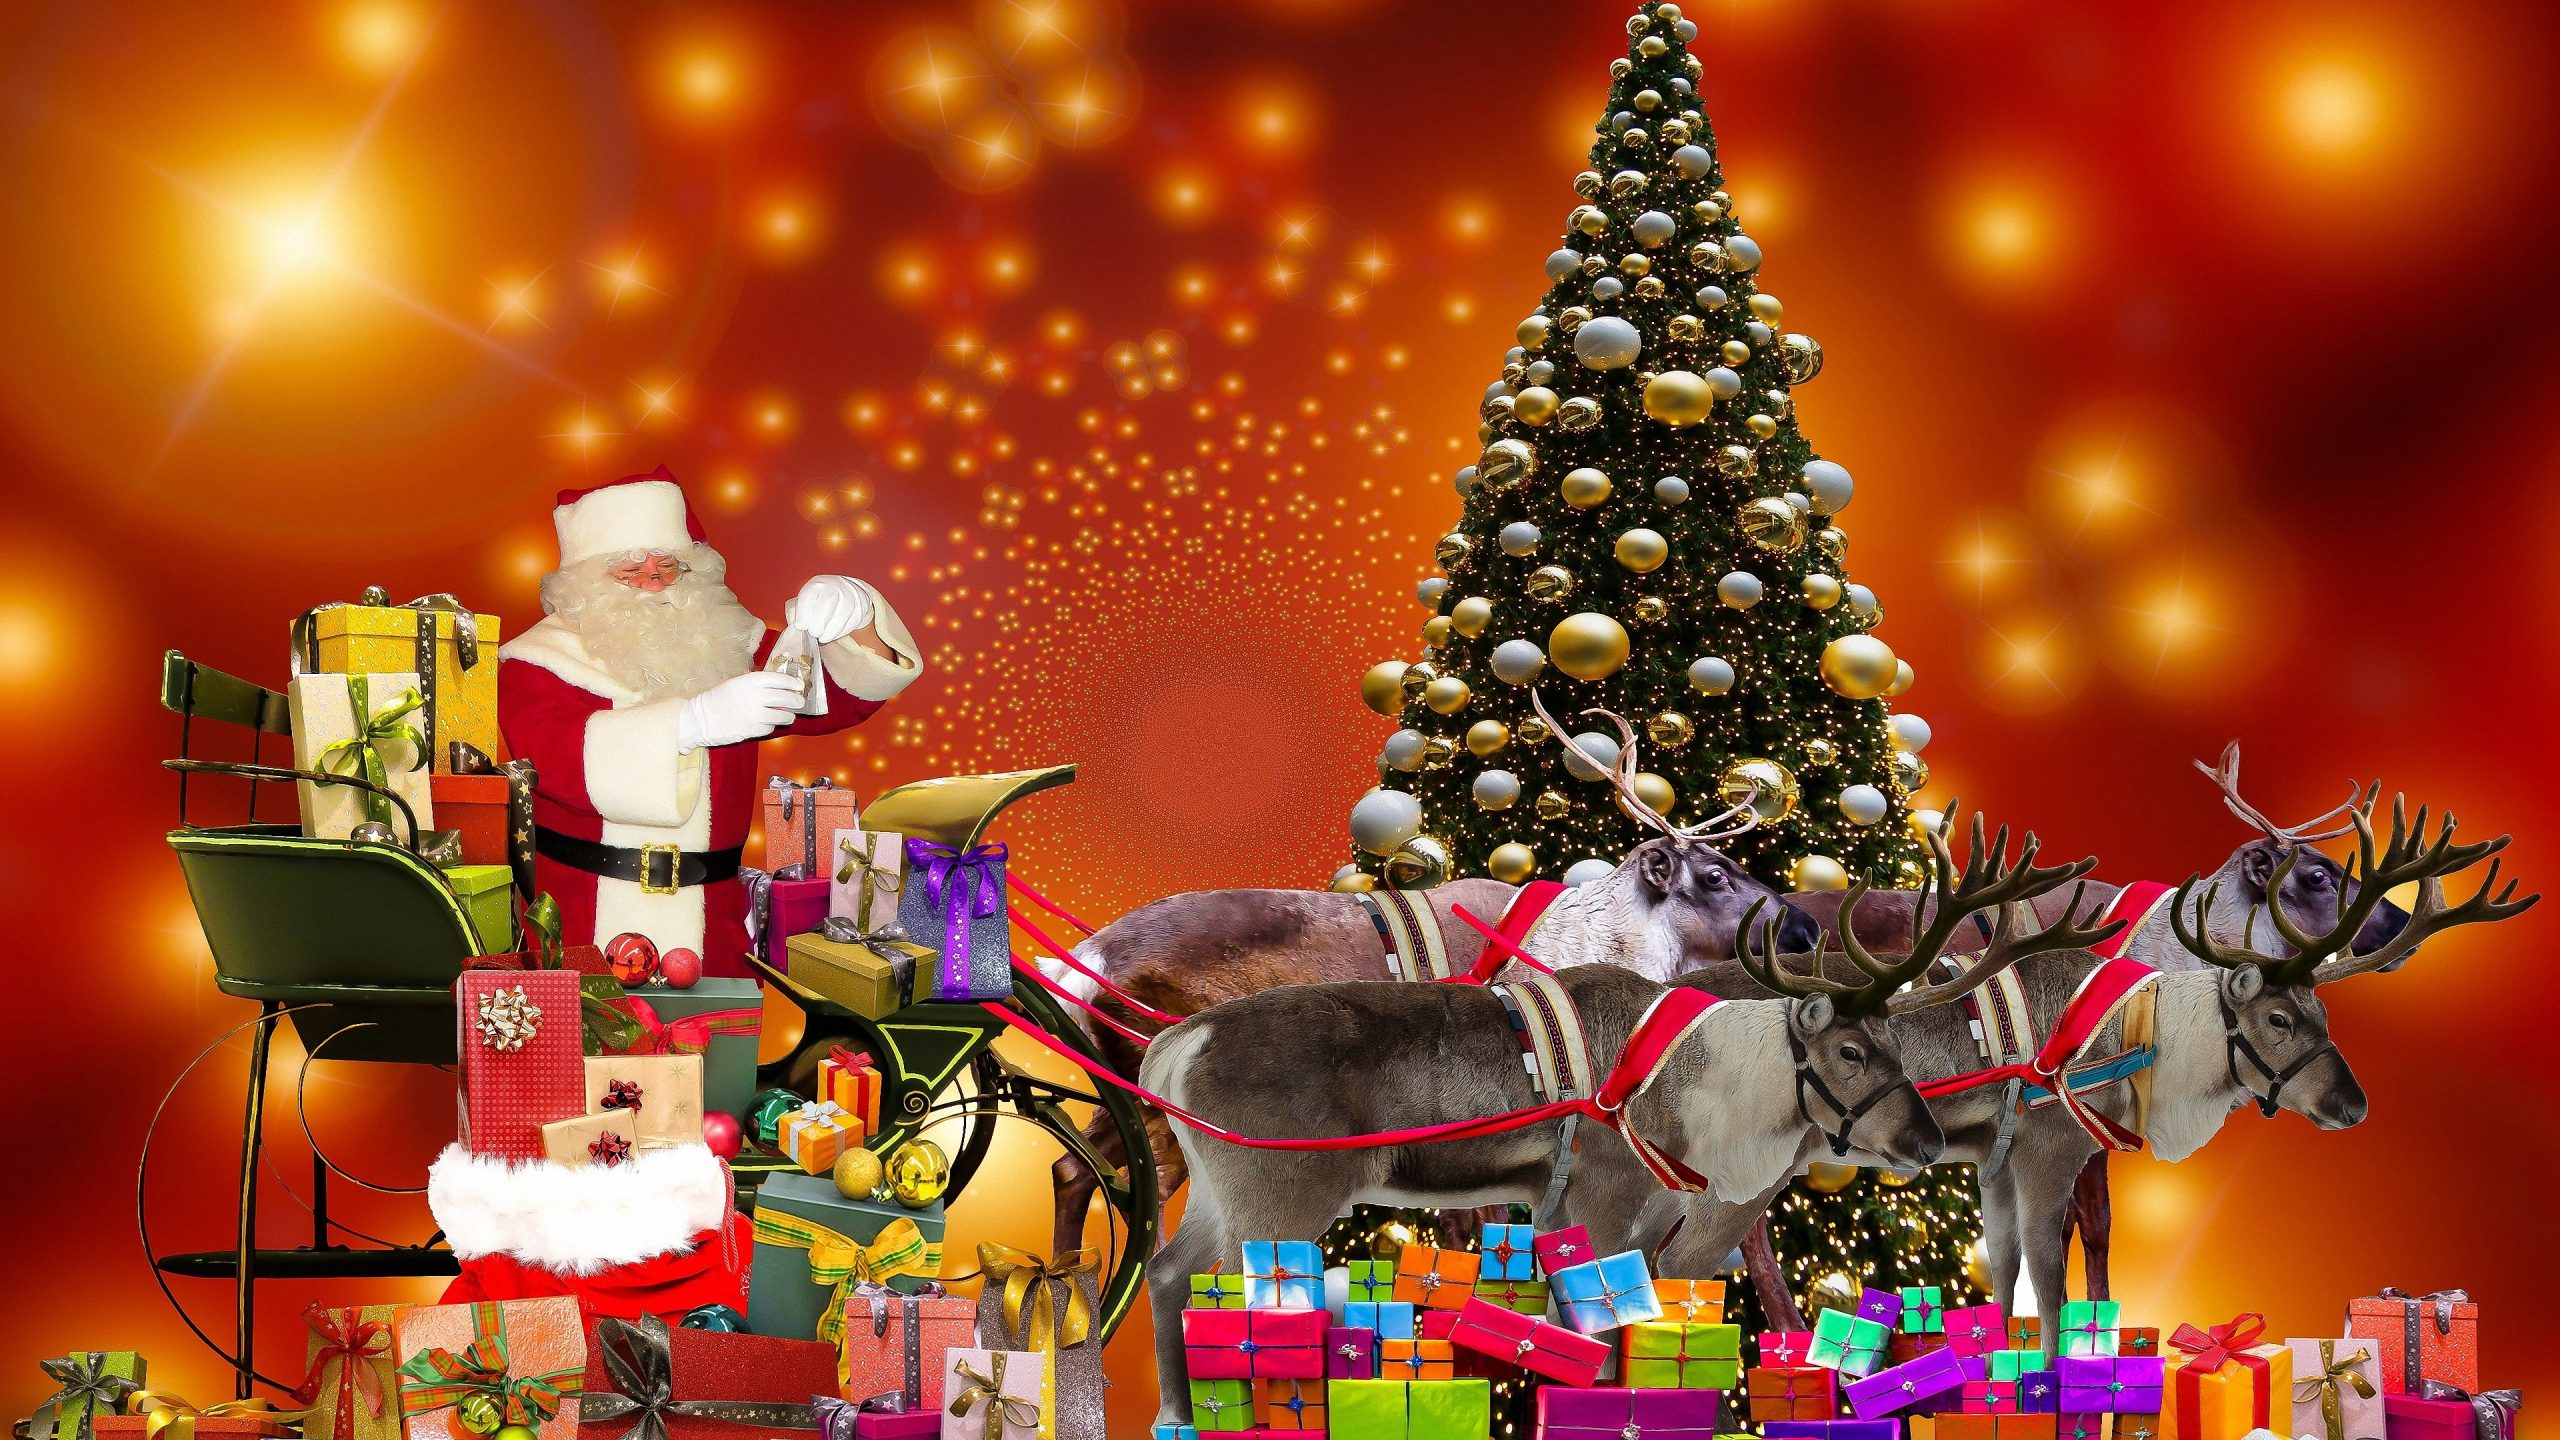 Weihnachten Hintergrundbilder Kostenlos 3840X2160 ganzes Weihnachten Kostenlose Bilder